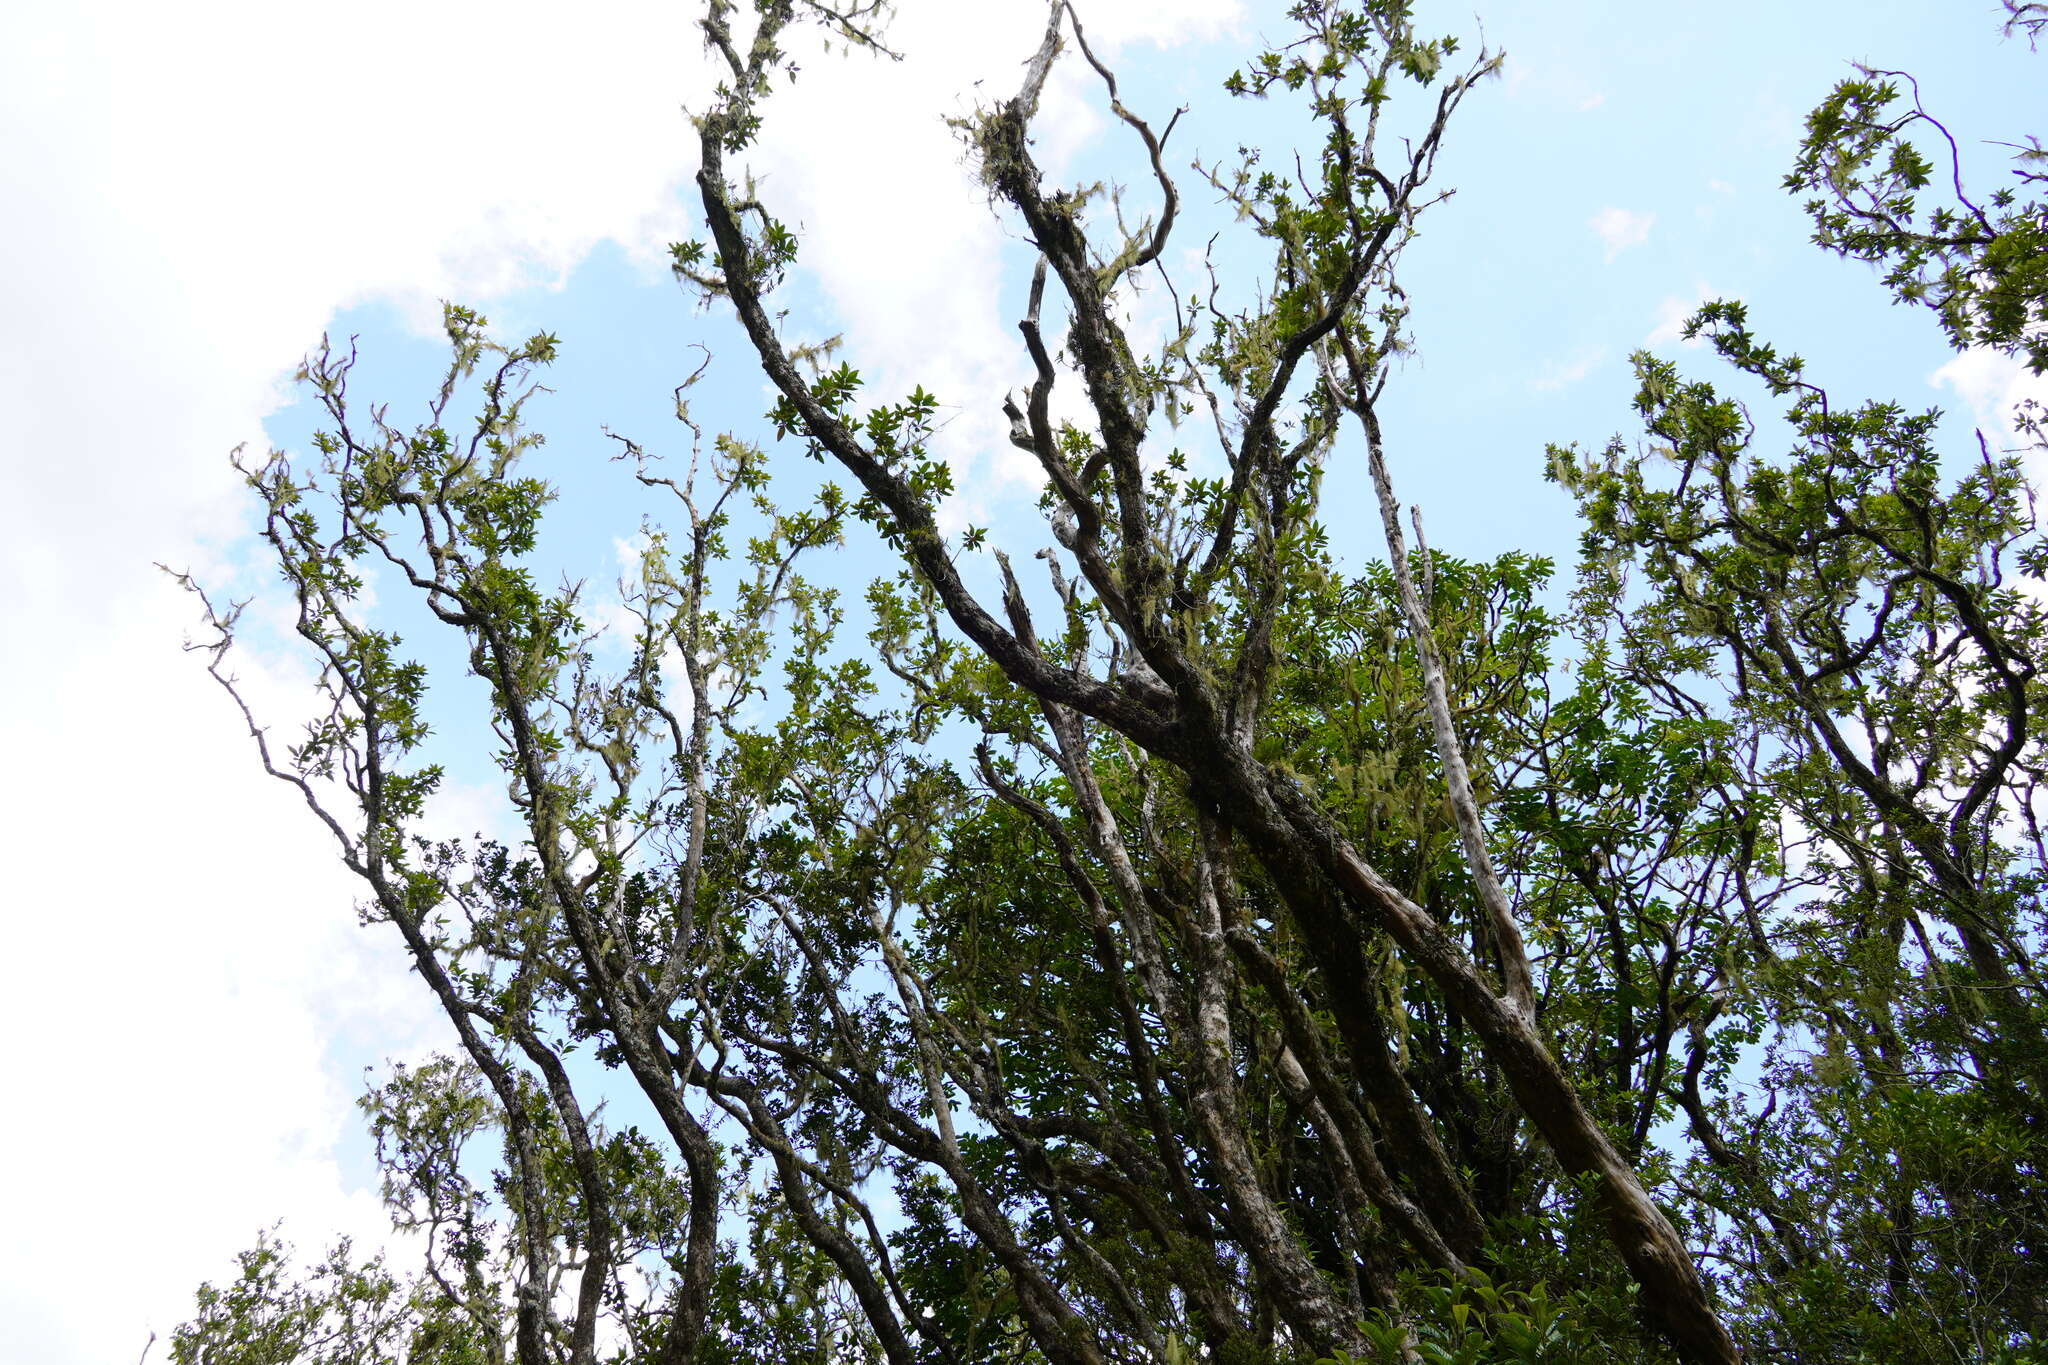 Sivun Nuxia verticillata Lam. kuva